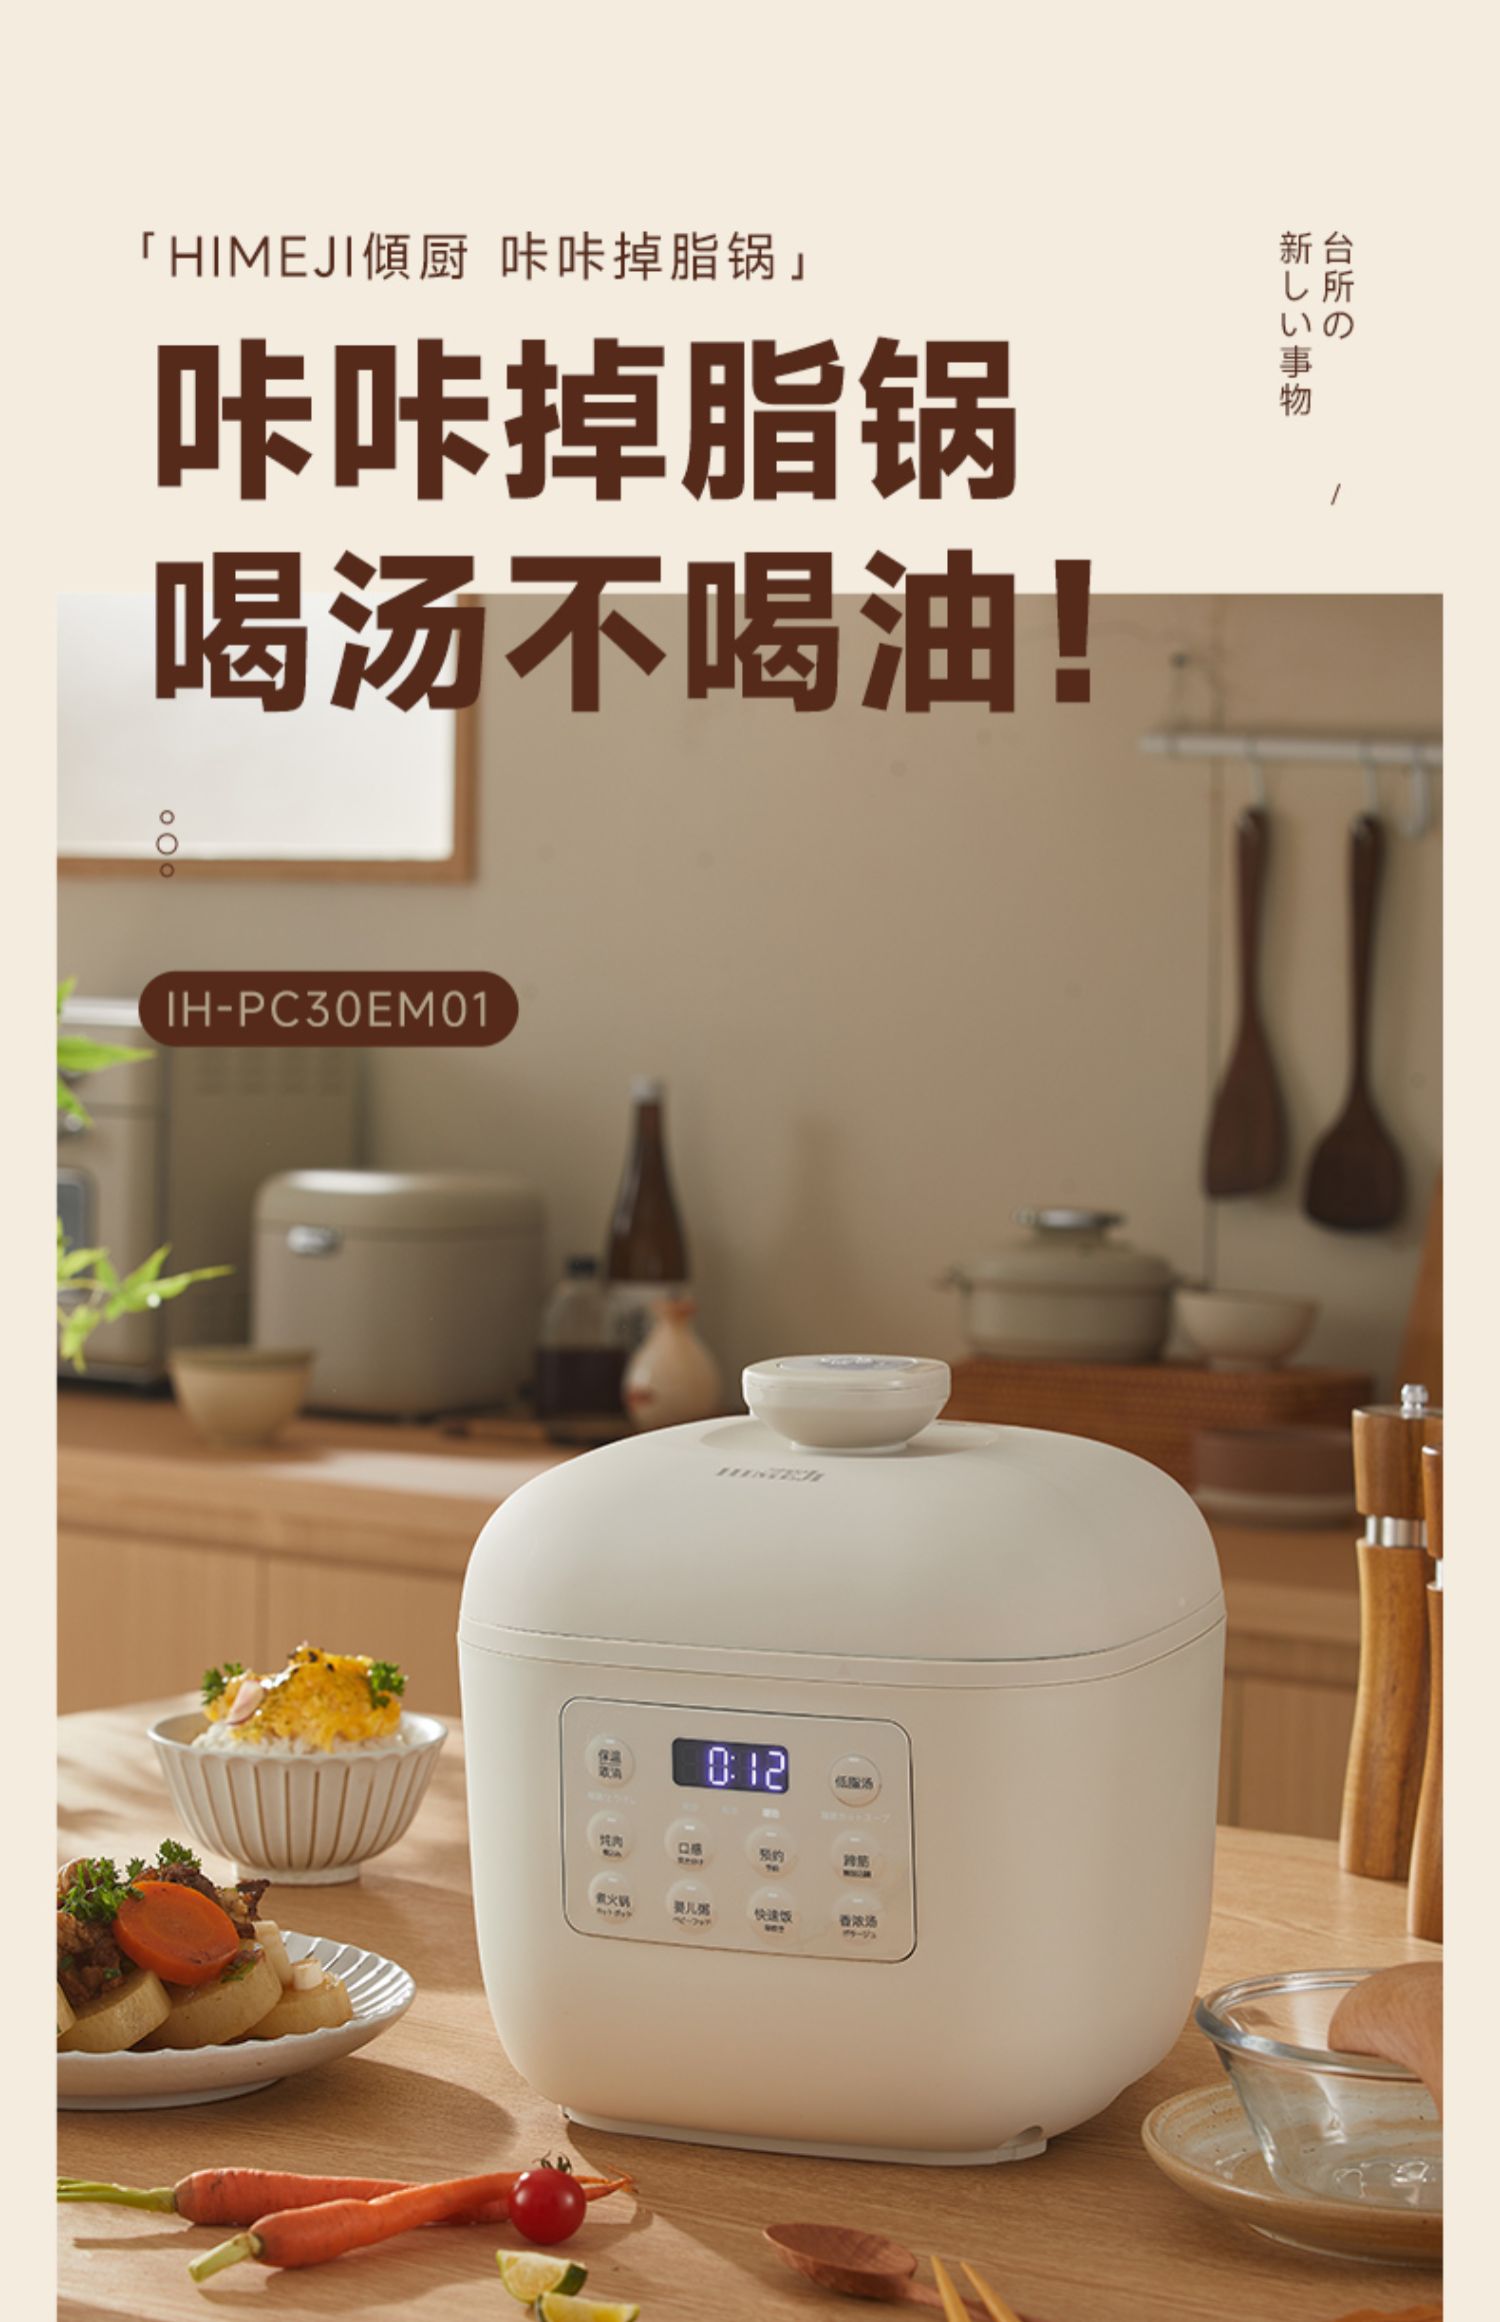 倾厨日式智能饭煲IH-RC30EM01 3L